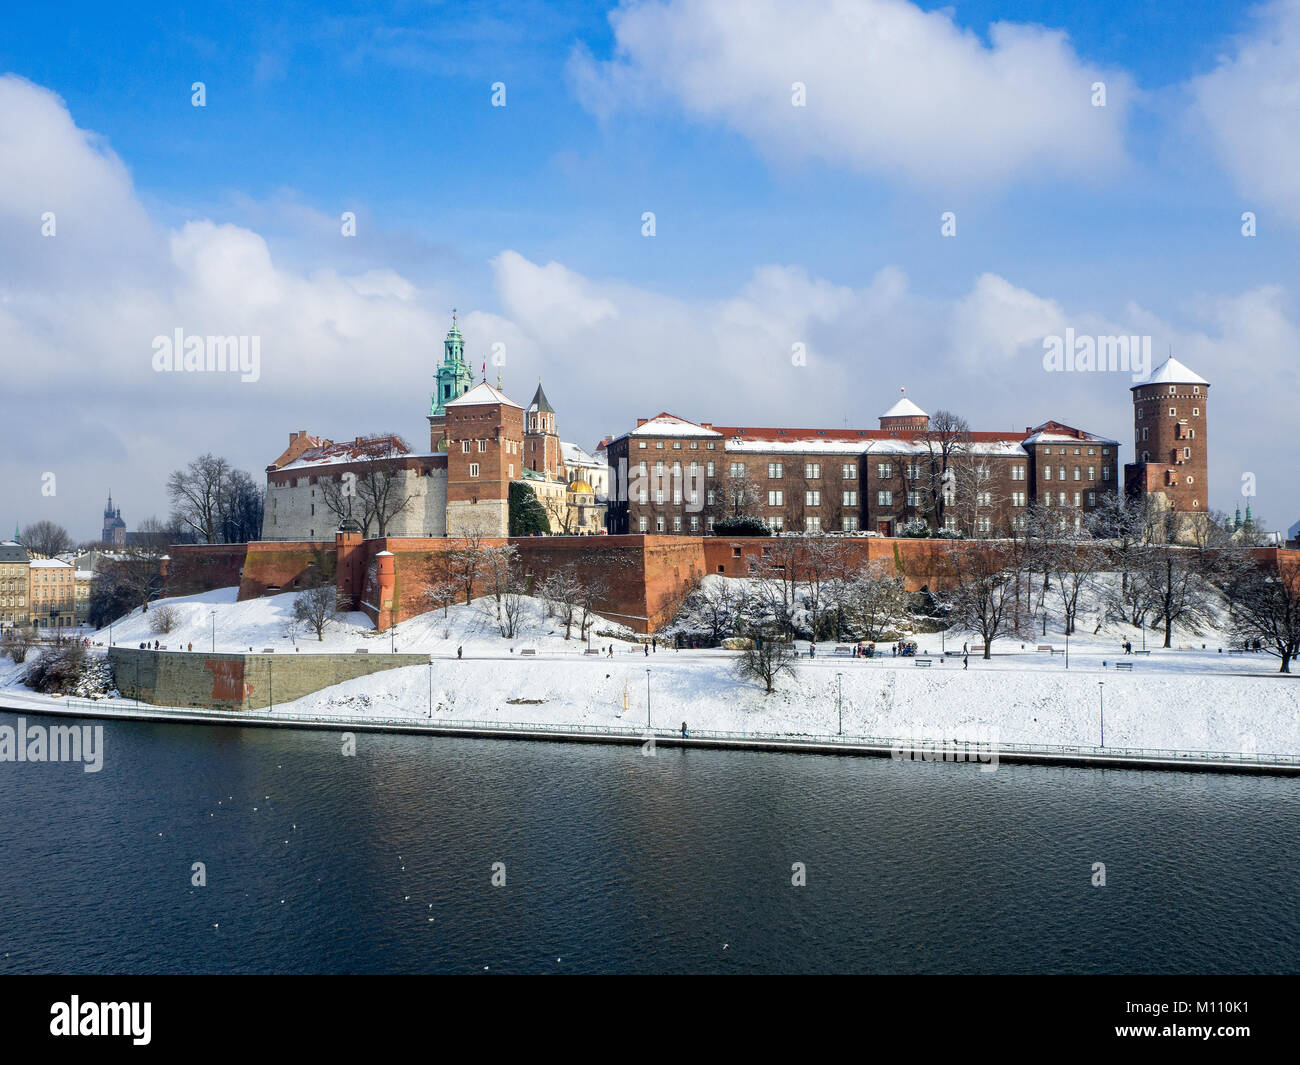 Kraków, Polen. Historischen Königlichen Schloss Wawel, der Kathedrale mit Renaissance Sigmund Kapelle mit goldenen Kuppel und die Weichsel im Winter. Stockfoto